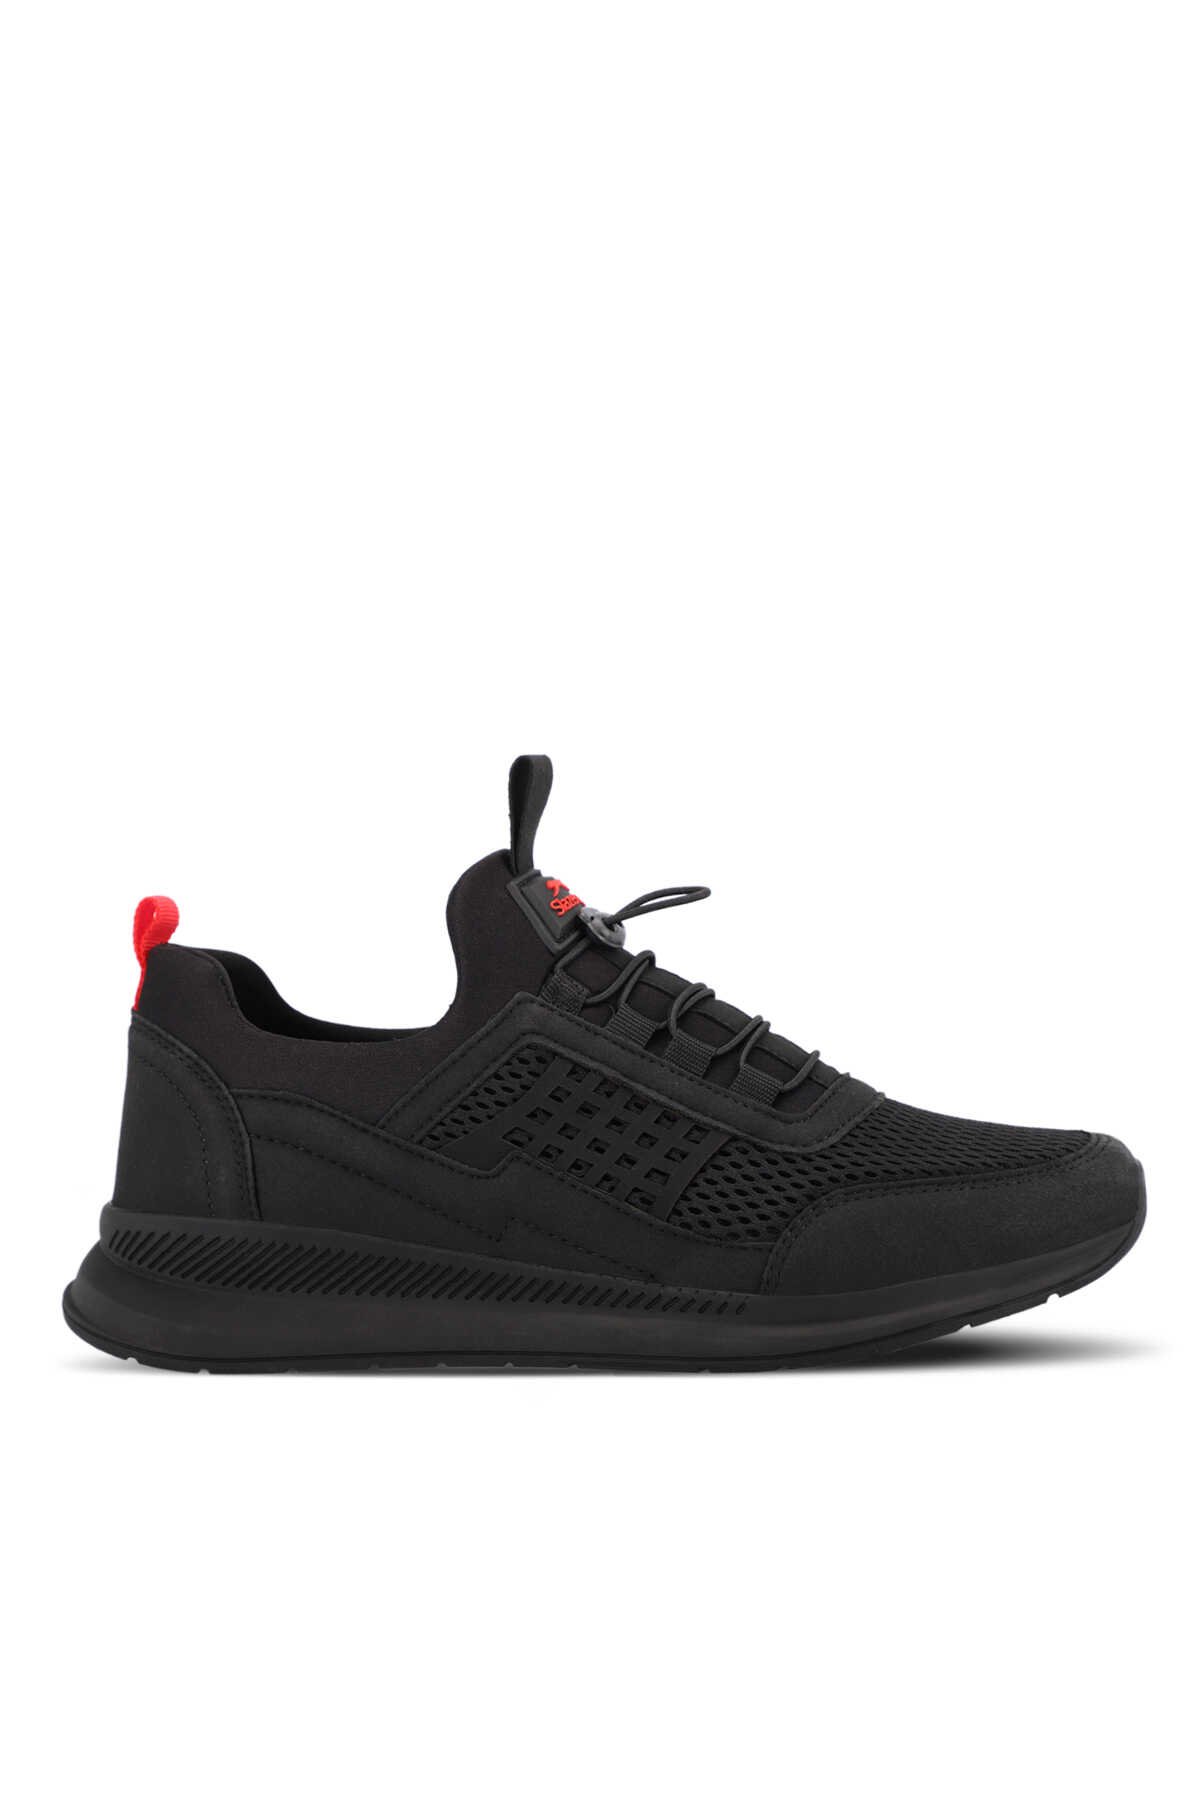 Slazenger - Slazenger TAROT Erkek Sneaker Ayakkabı Siyah / Kırmızı